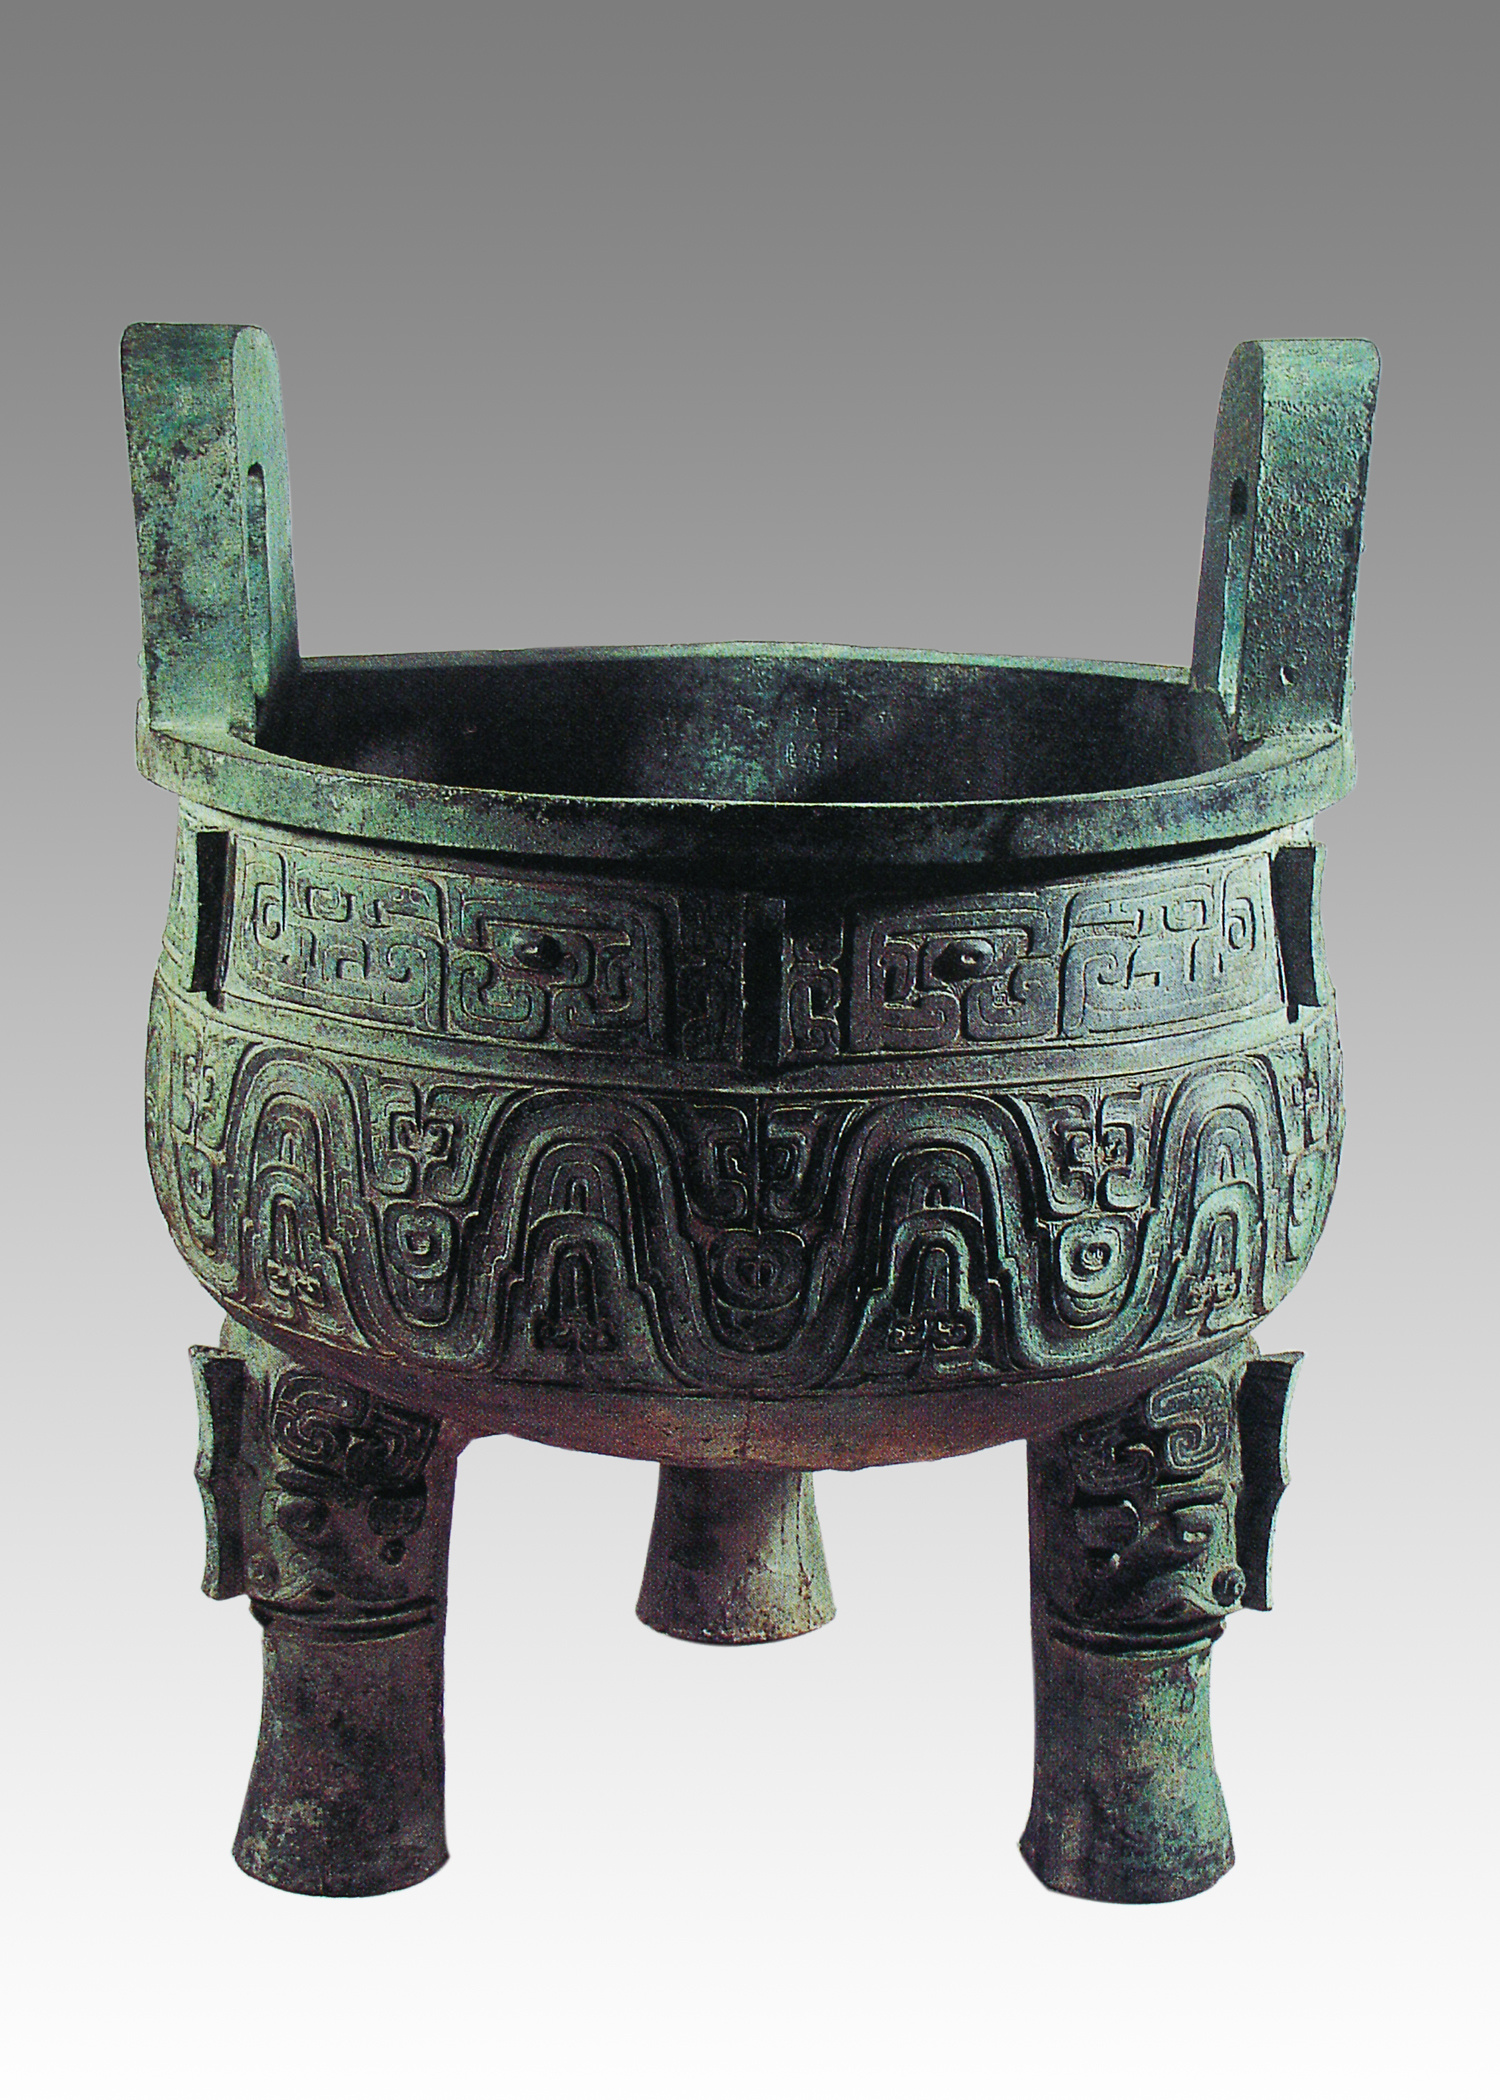 【陕西文物览】青铜器——大克鼎:上海博物馆的镇馆之